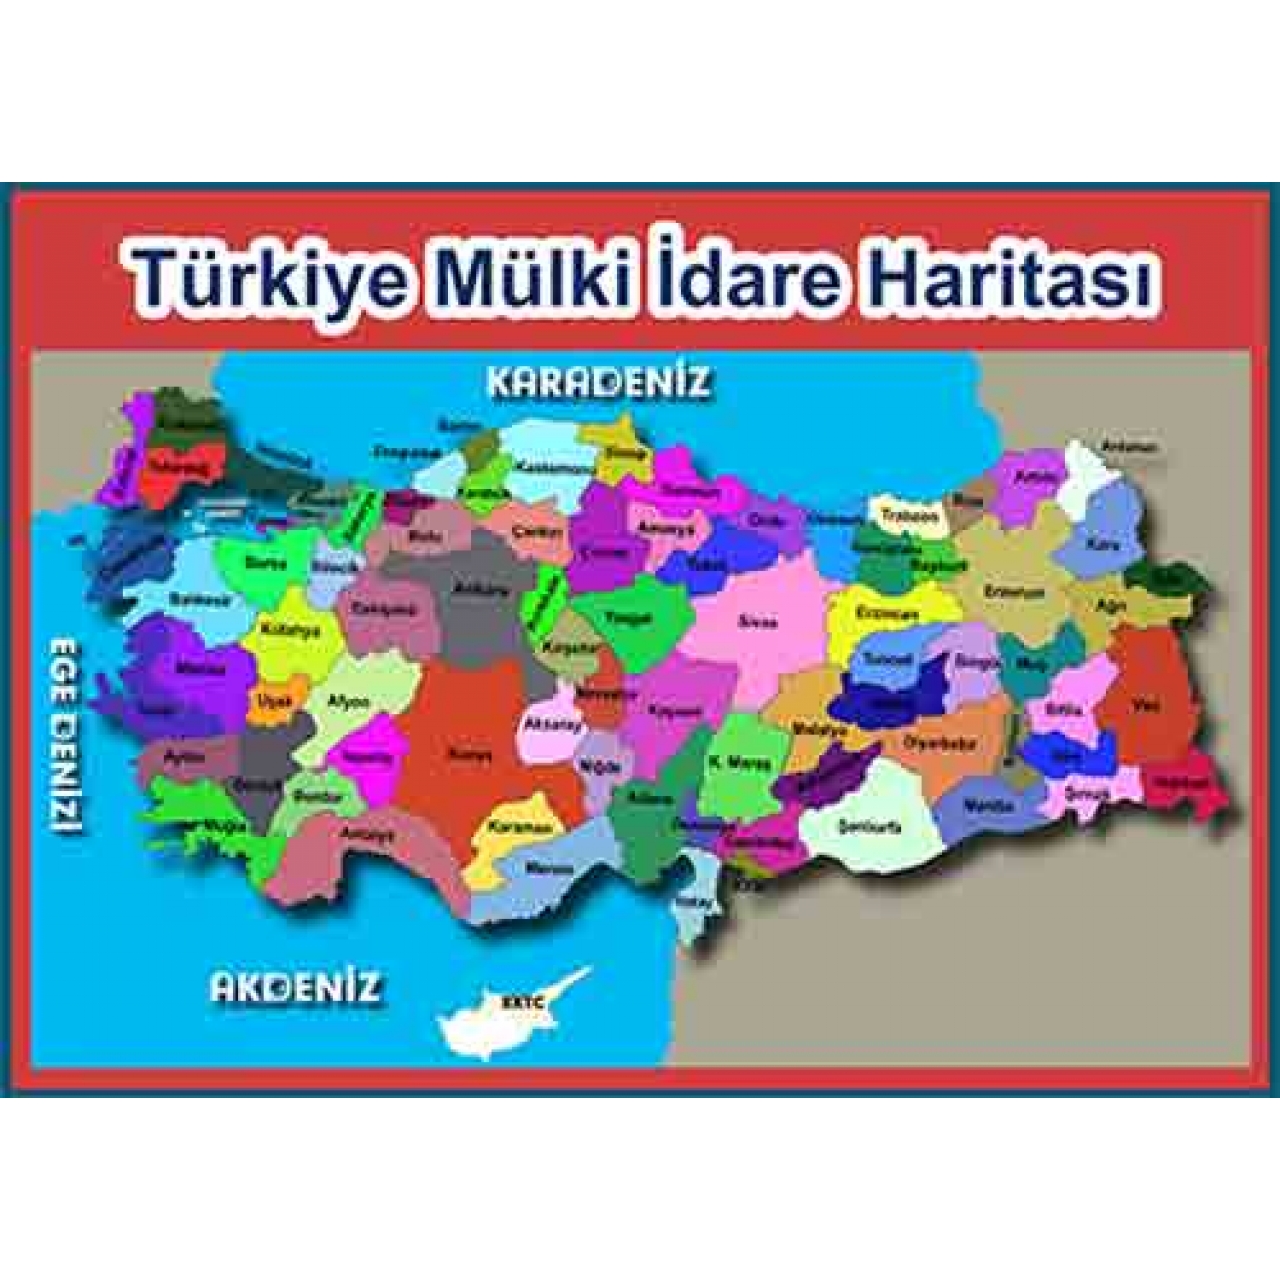 Türkiye Haritası Ders Afişi Poster